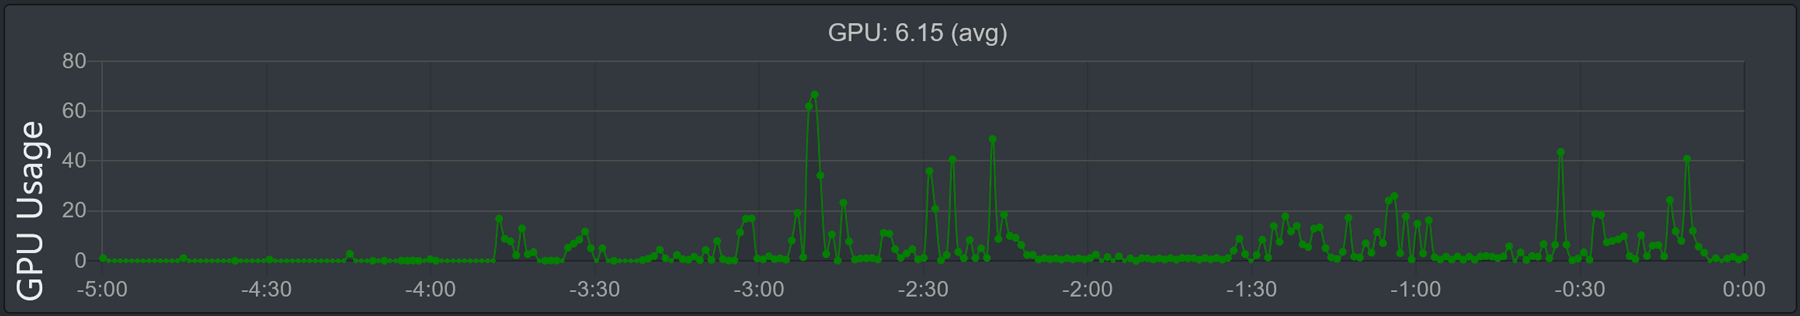 Εικόνα του γραφήματος "Χρήση GPU".